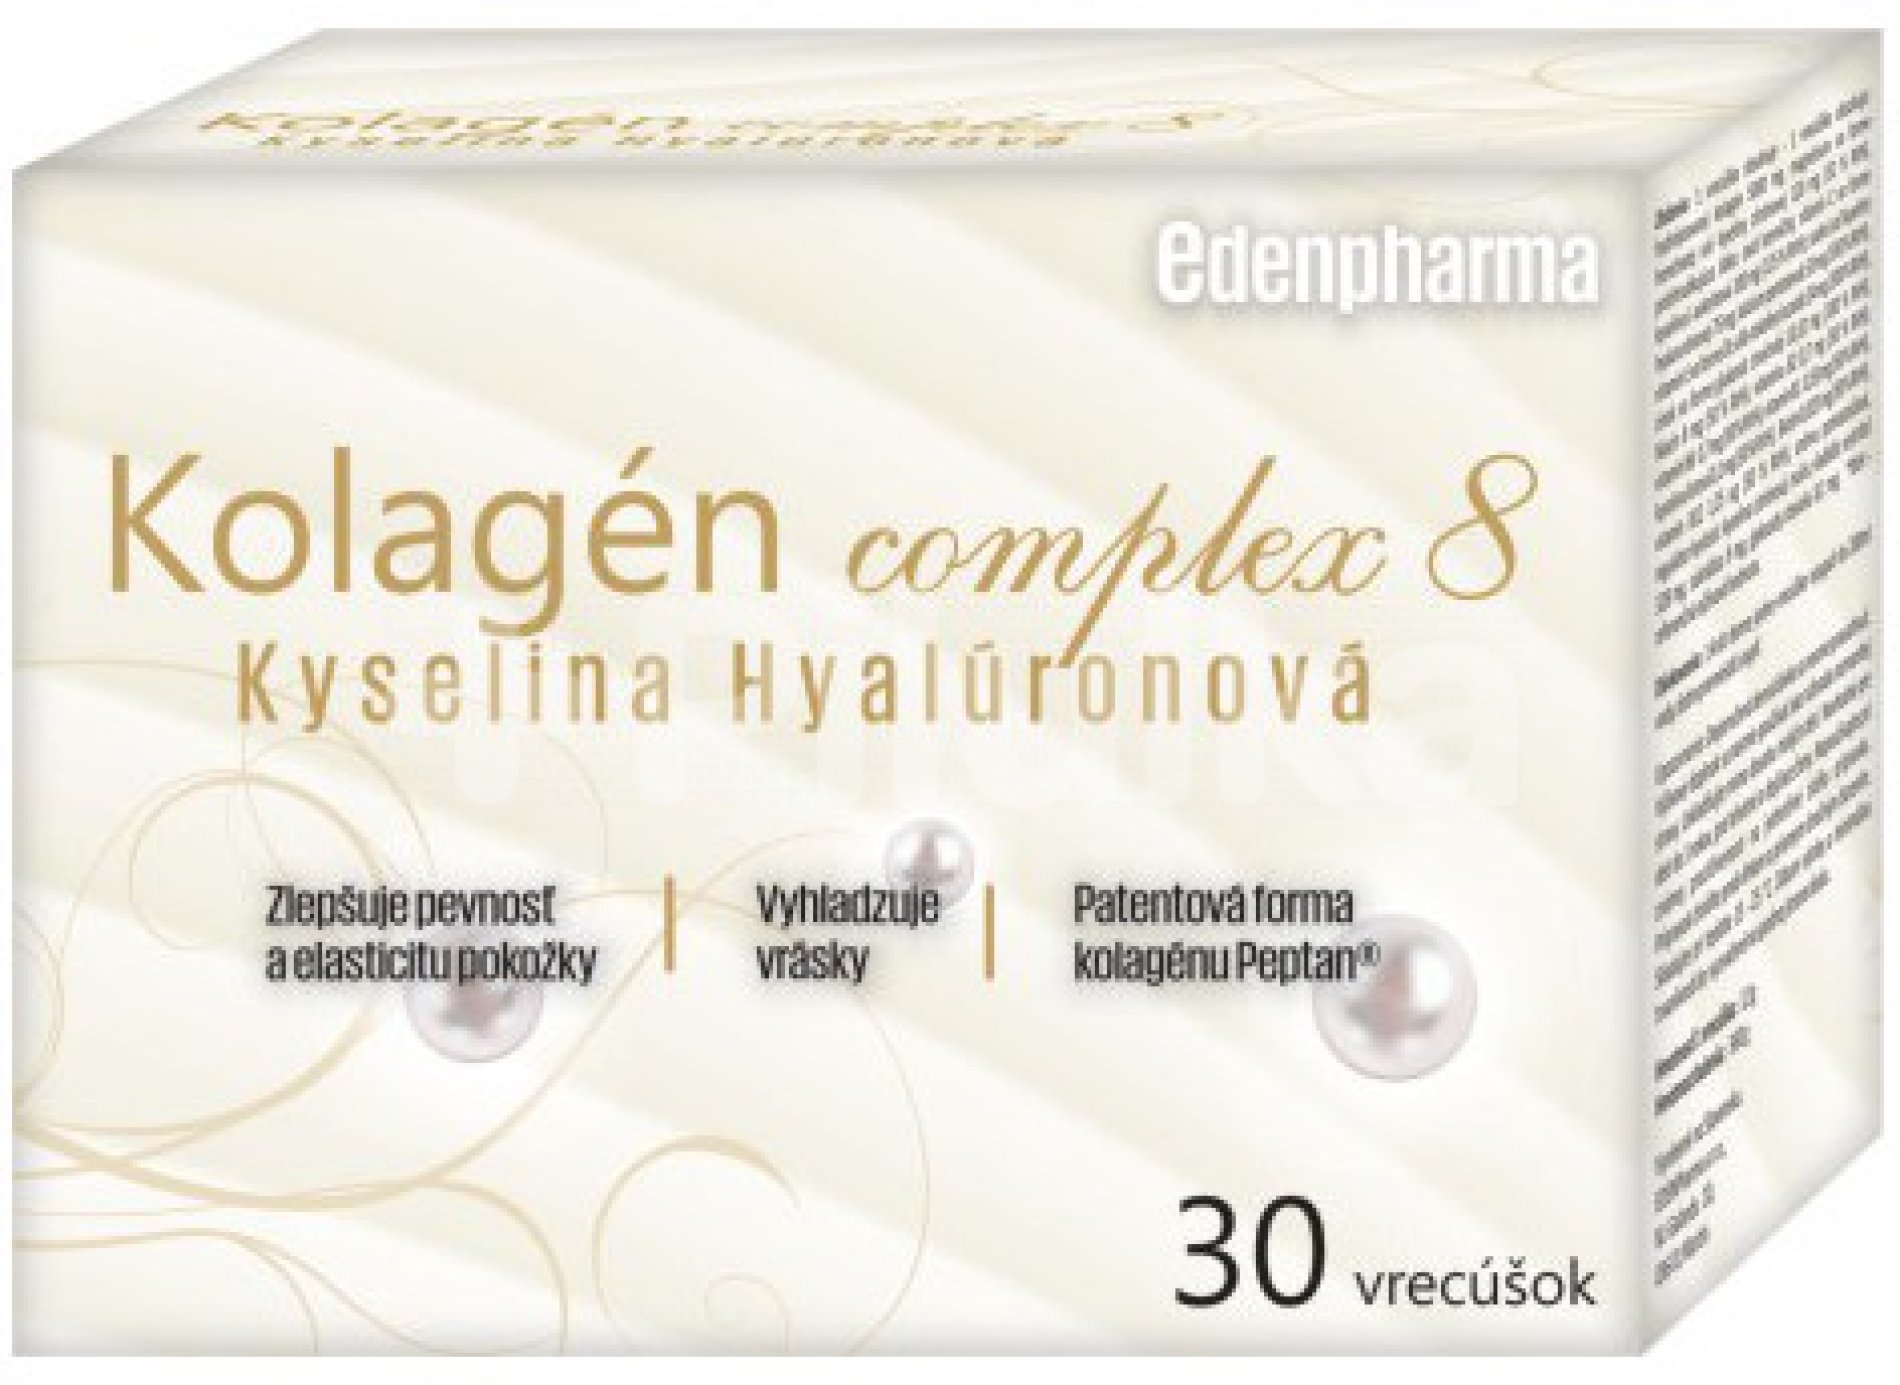 Kolagén + Kyselina Hyaluronová 30 sáčok